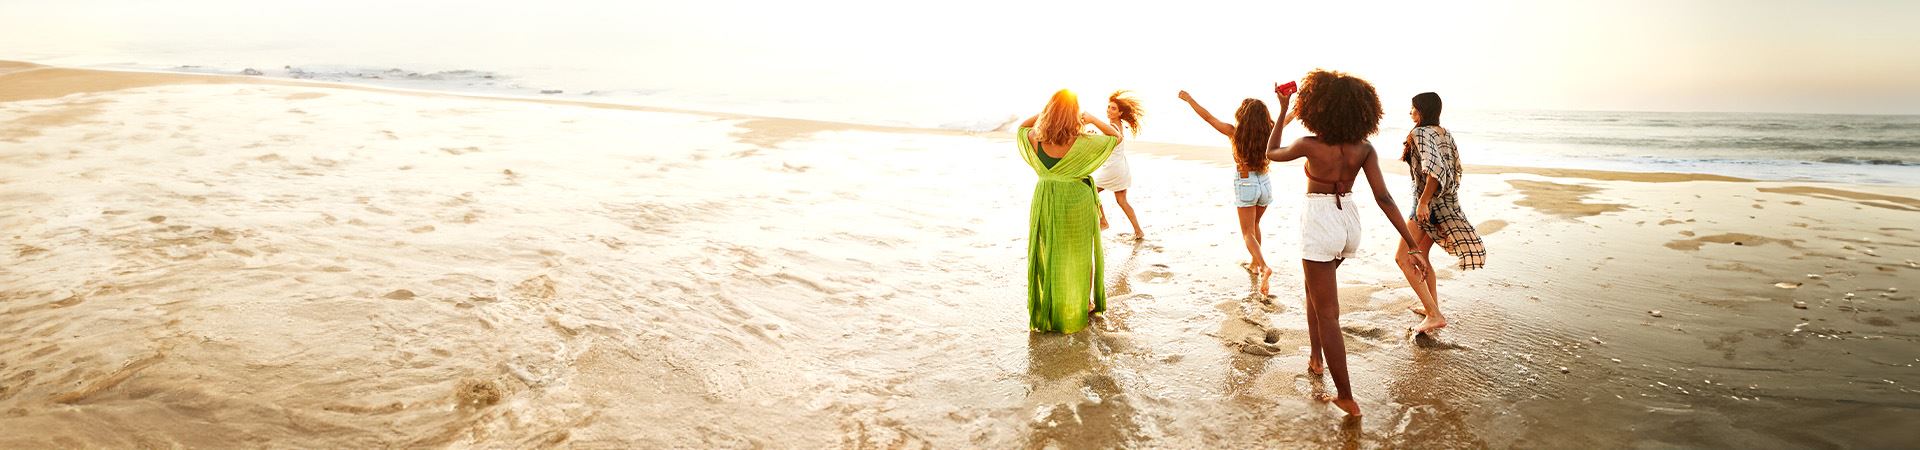 Dieses Bild zeigt fünf Mädchen am Meer. Eins von ihnen hat die Arme in der Luft und ein anderes rennt. Alle von ihnen tragen leichte Sommerkleidung. Im Hintergrund ist das Meer zu sehen und das Licht deutet auf den angebrochenen Sonnenuntergang hin.